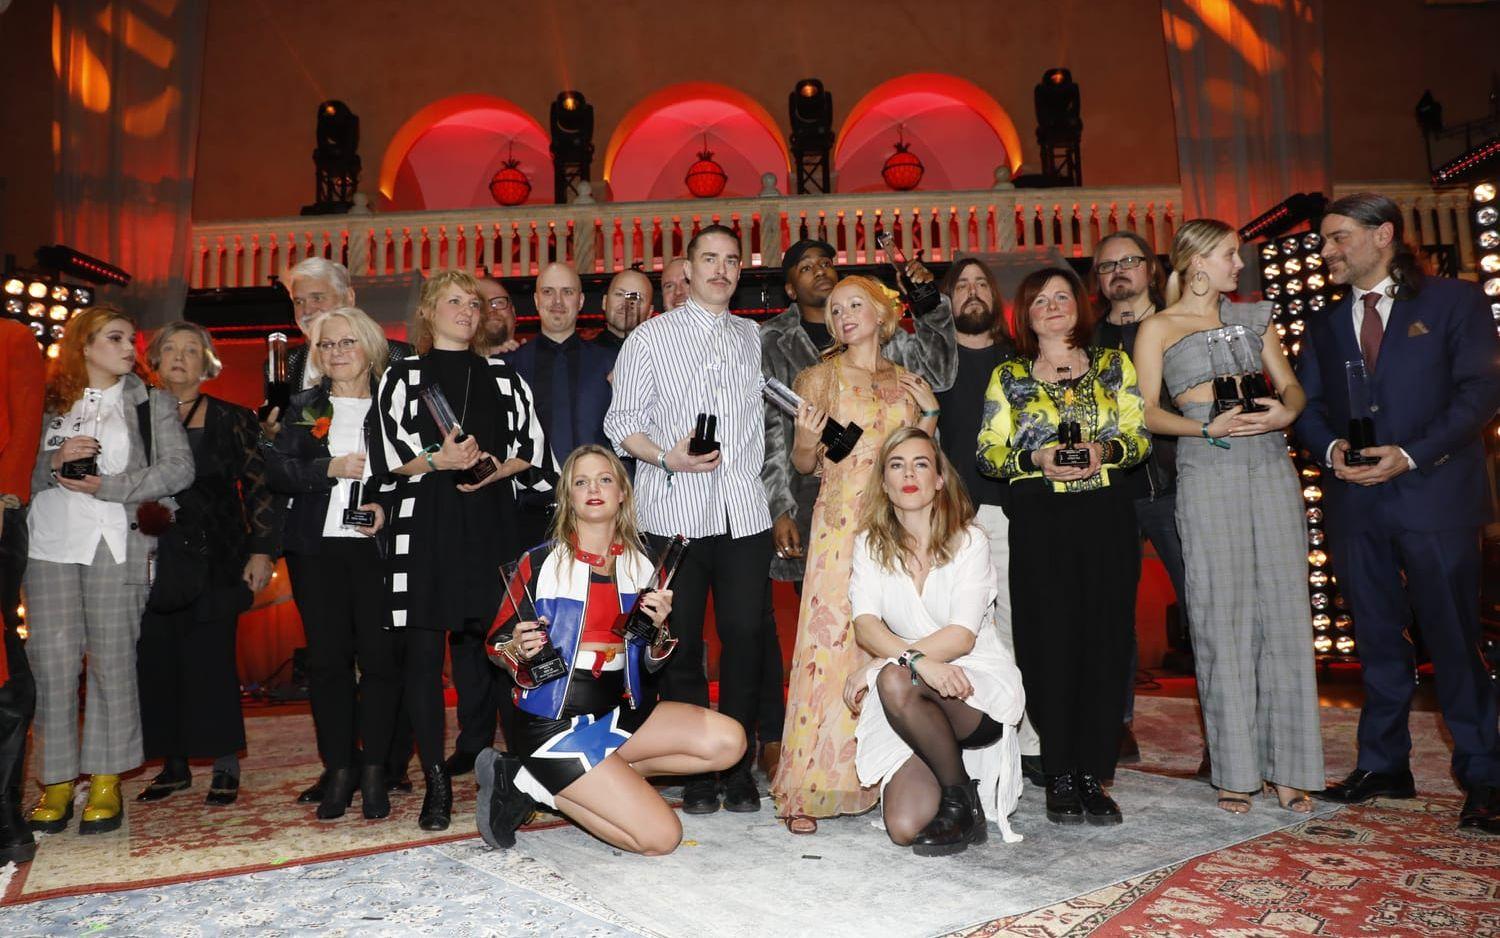 Gruppbild på alla närvarande pristagare vid Grammisgalan 2018 på Grand Hotel på torsdagen. Längst fram Tove Lo (2 Grammisar) och Annika Norlin (1 grammis). Till höger Zara Larssons lillasyster Hanna med två av systerns grammisar.